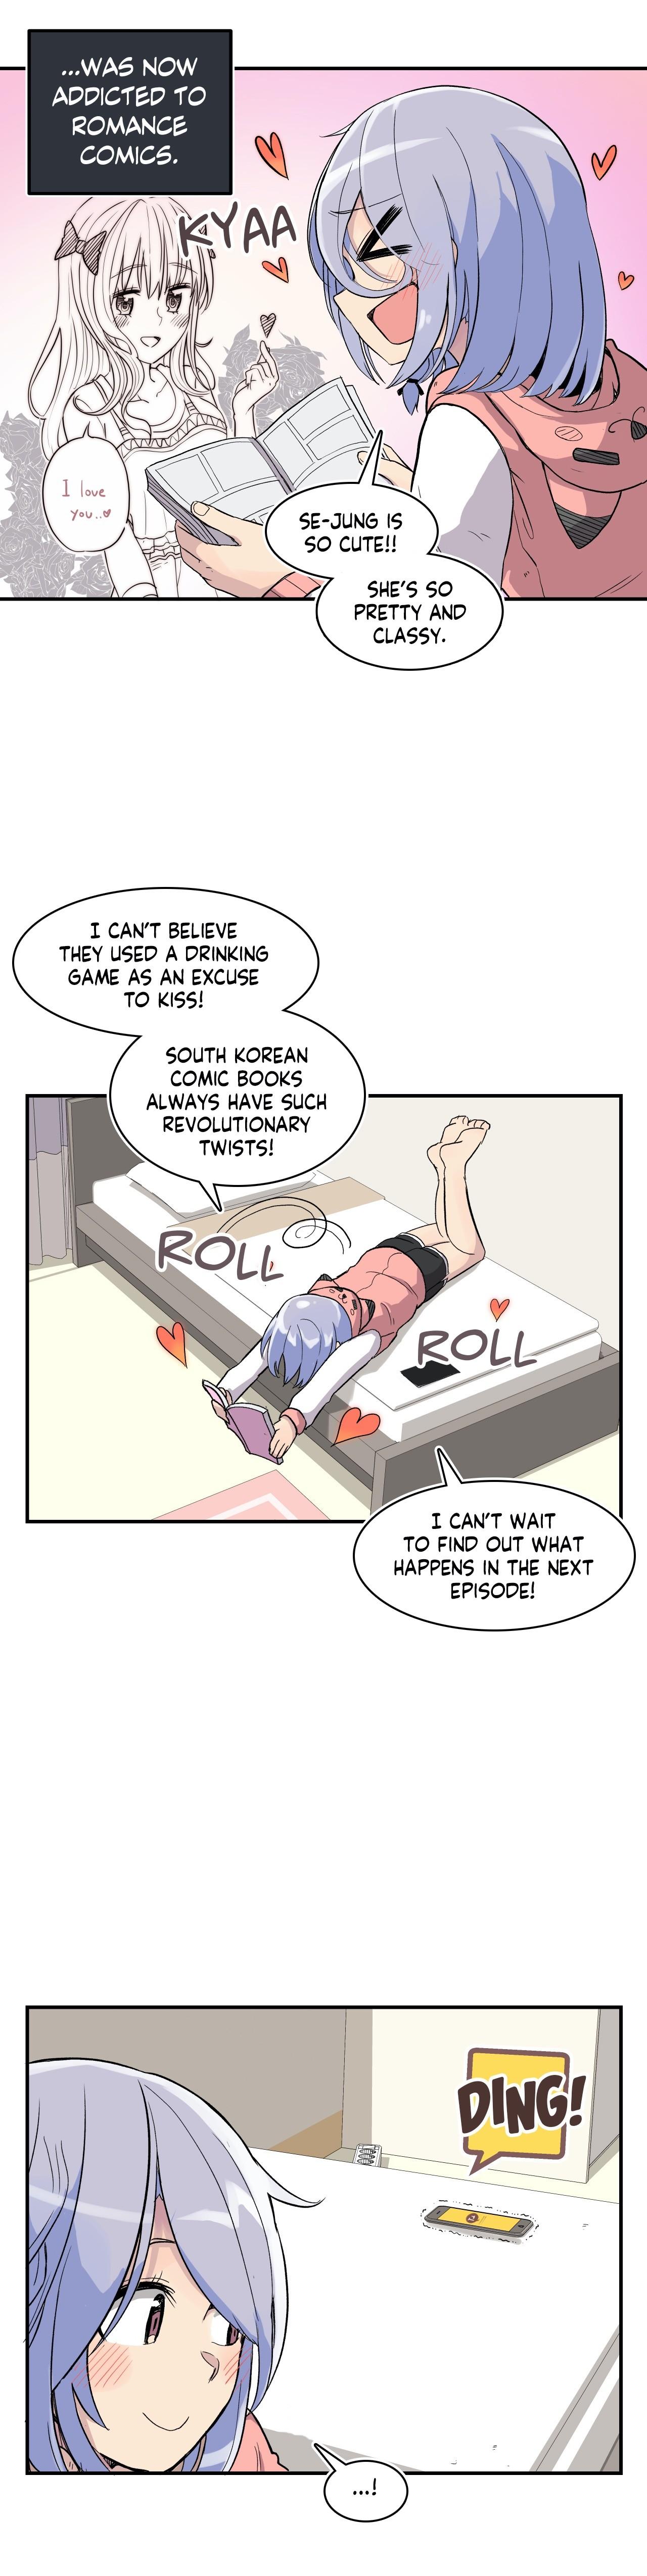 Erotic Manga Department! - Page 2